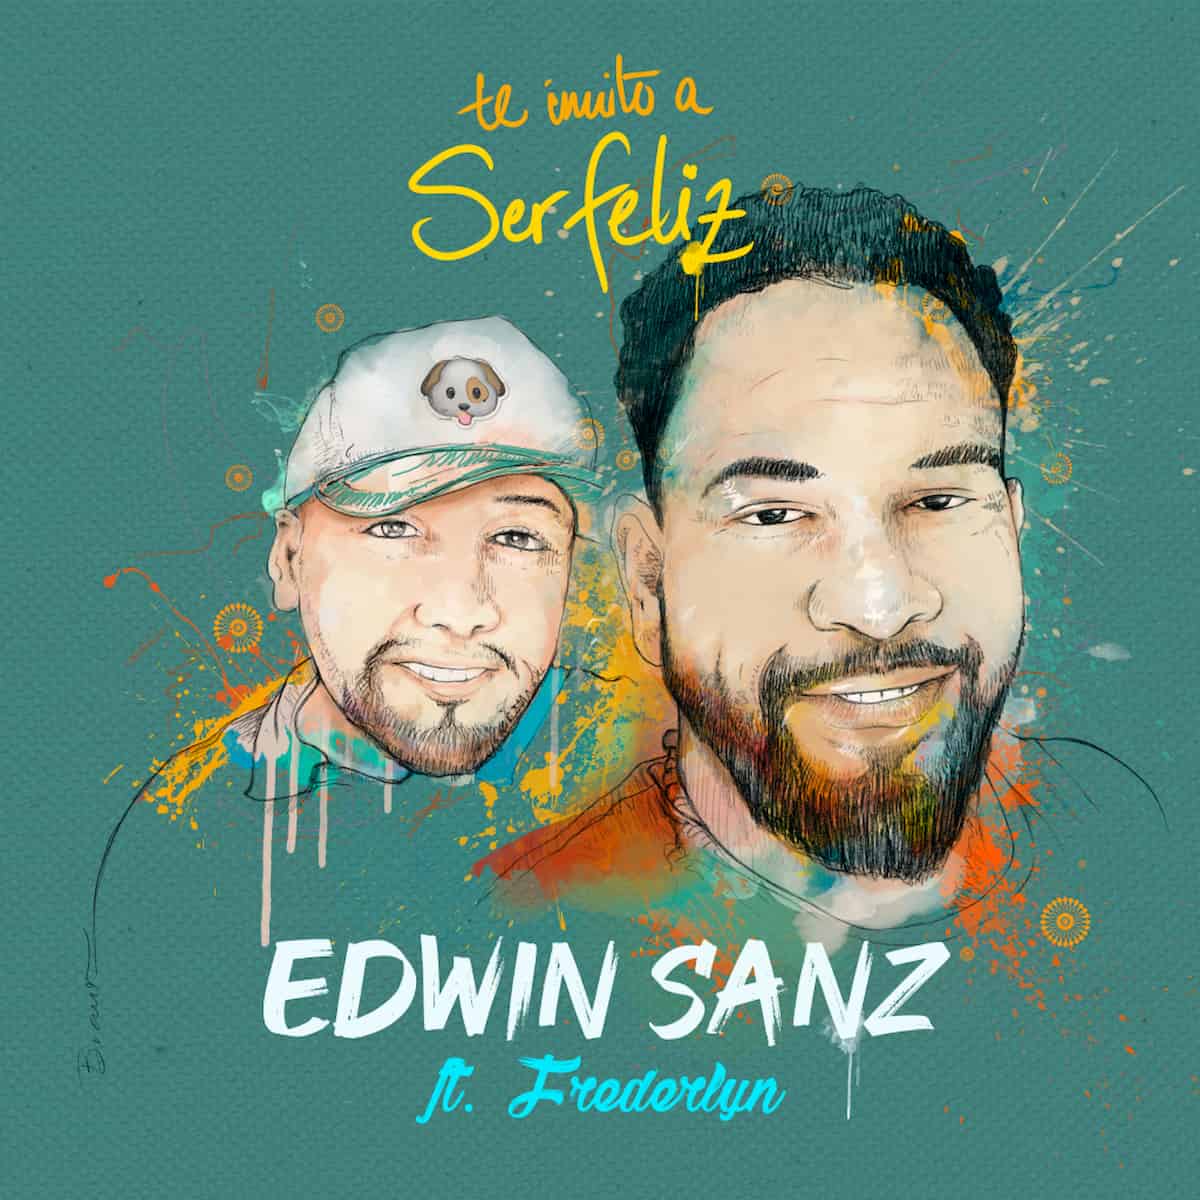 Neues Salsa-Lied von Edwin Sanz Te Invito A Ser Feliz veröffentlicht